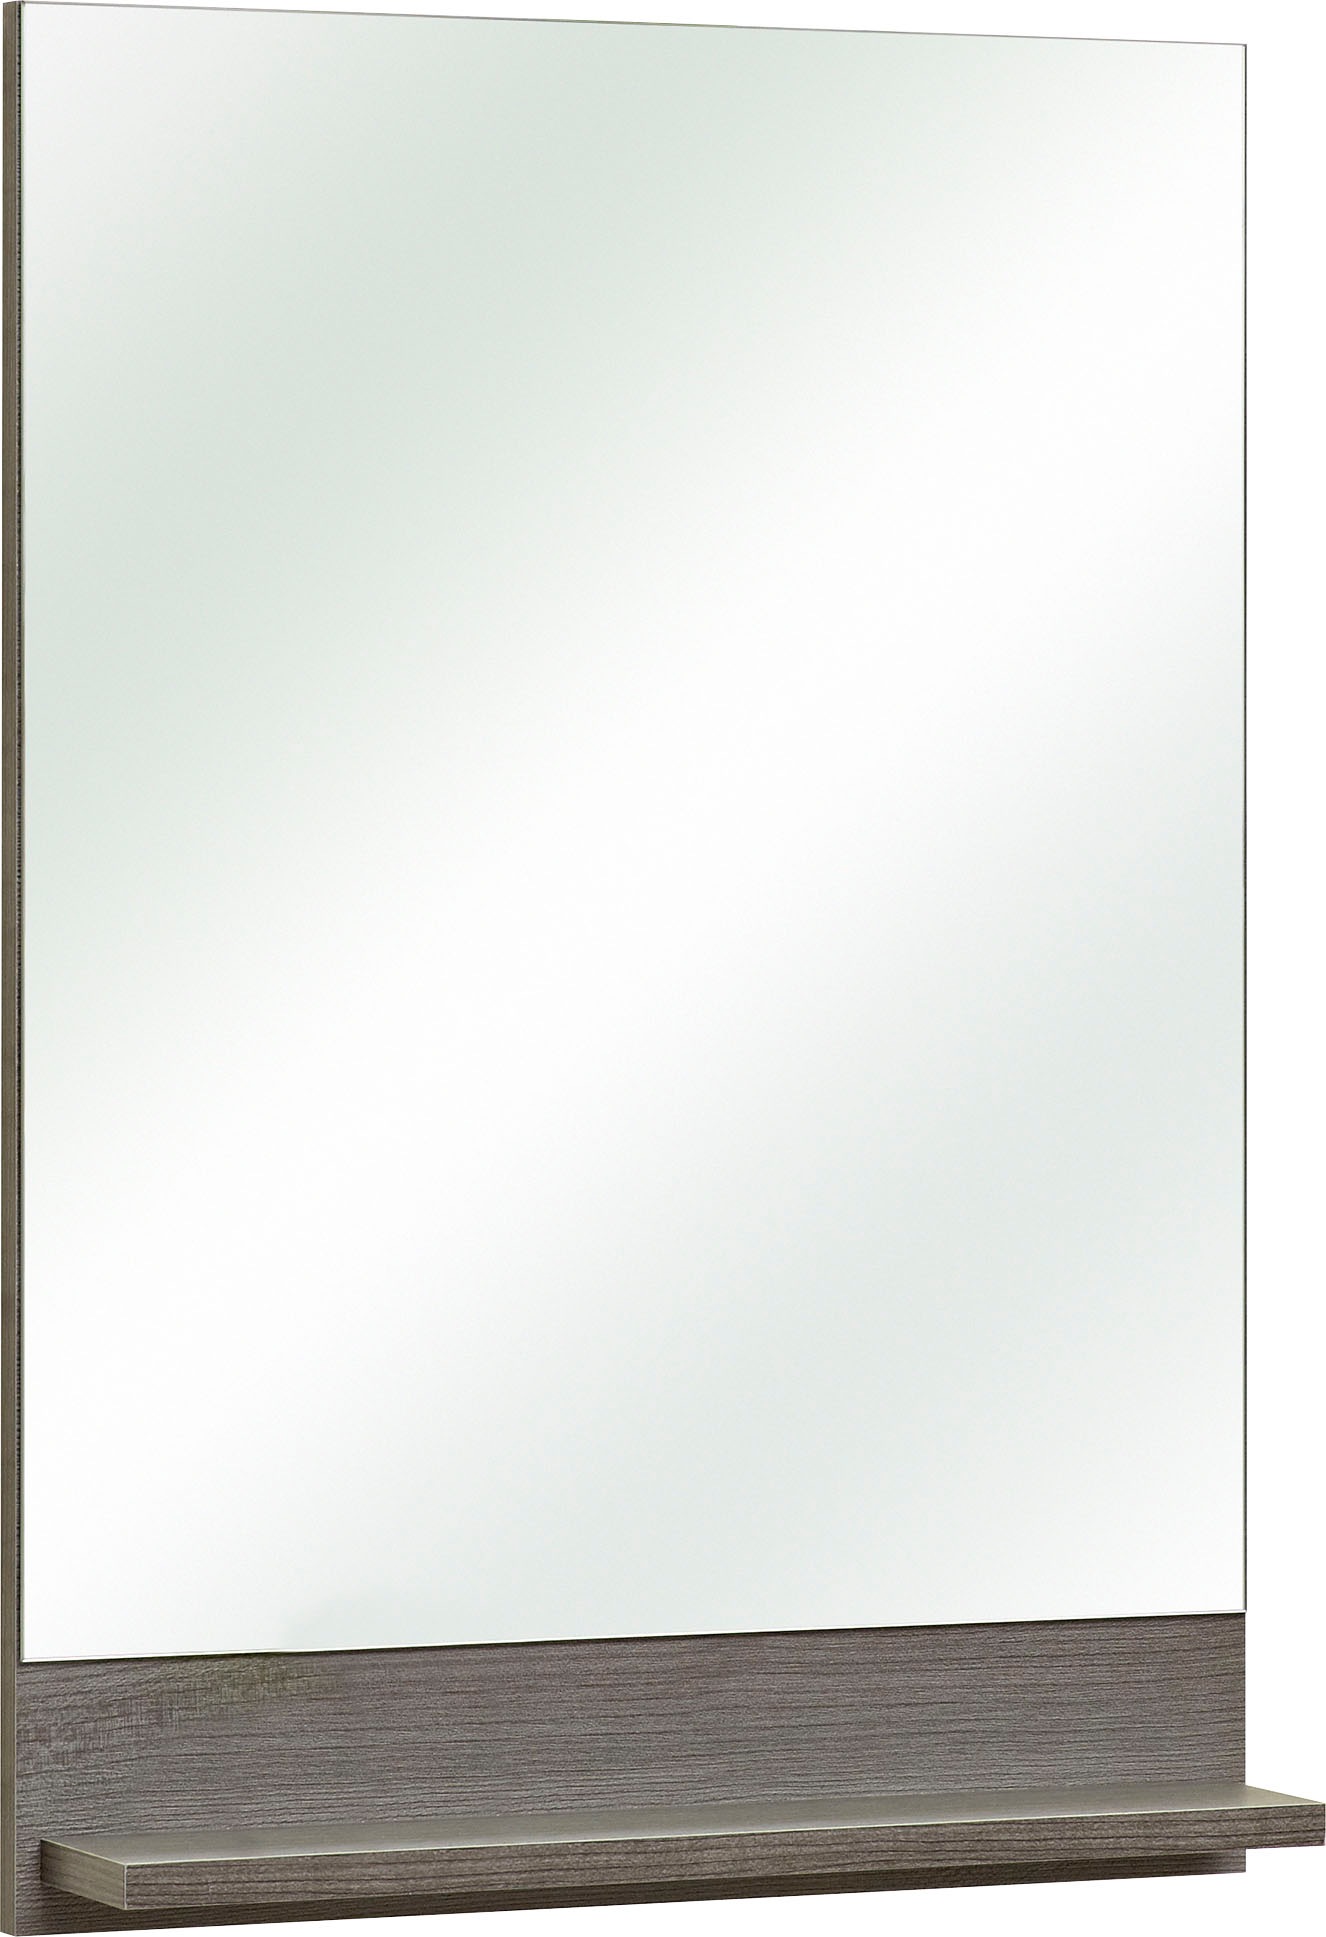 Saphir Badmöbel-Set »Quickset 2-teilig, Keramikwaschtisch mit LED-Spiegel, 50 cm breit«, (4 St.), Waschplatz mit 1 Tür, 1 Schublade, inkl. Türdämpfer, Gäste Bad-Set